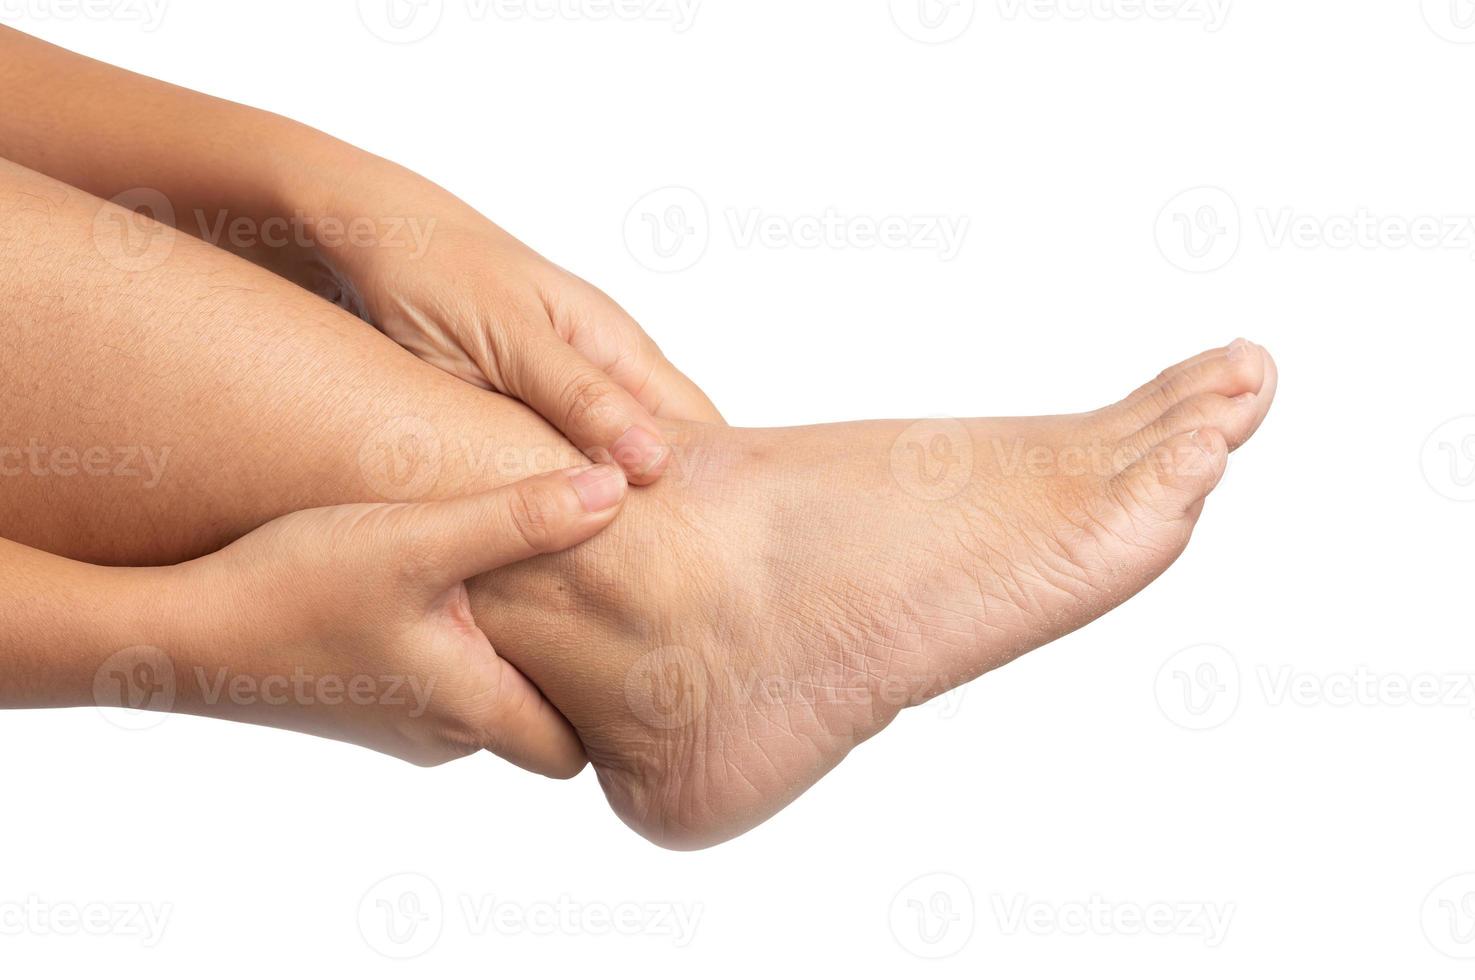 vrouw met enkelpijn die twee handen gebruikt die een been vasthouden en haar pijnlijk masseert op geïsoleerd foto